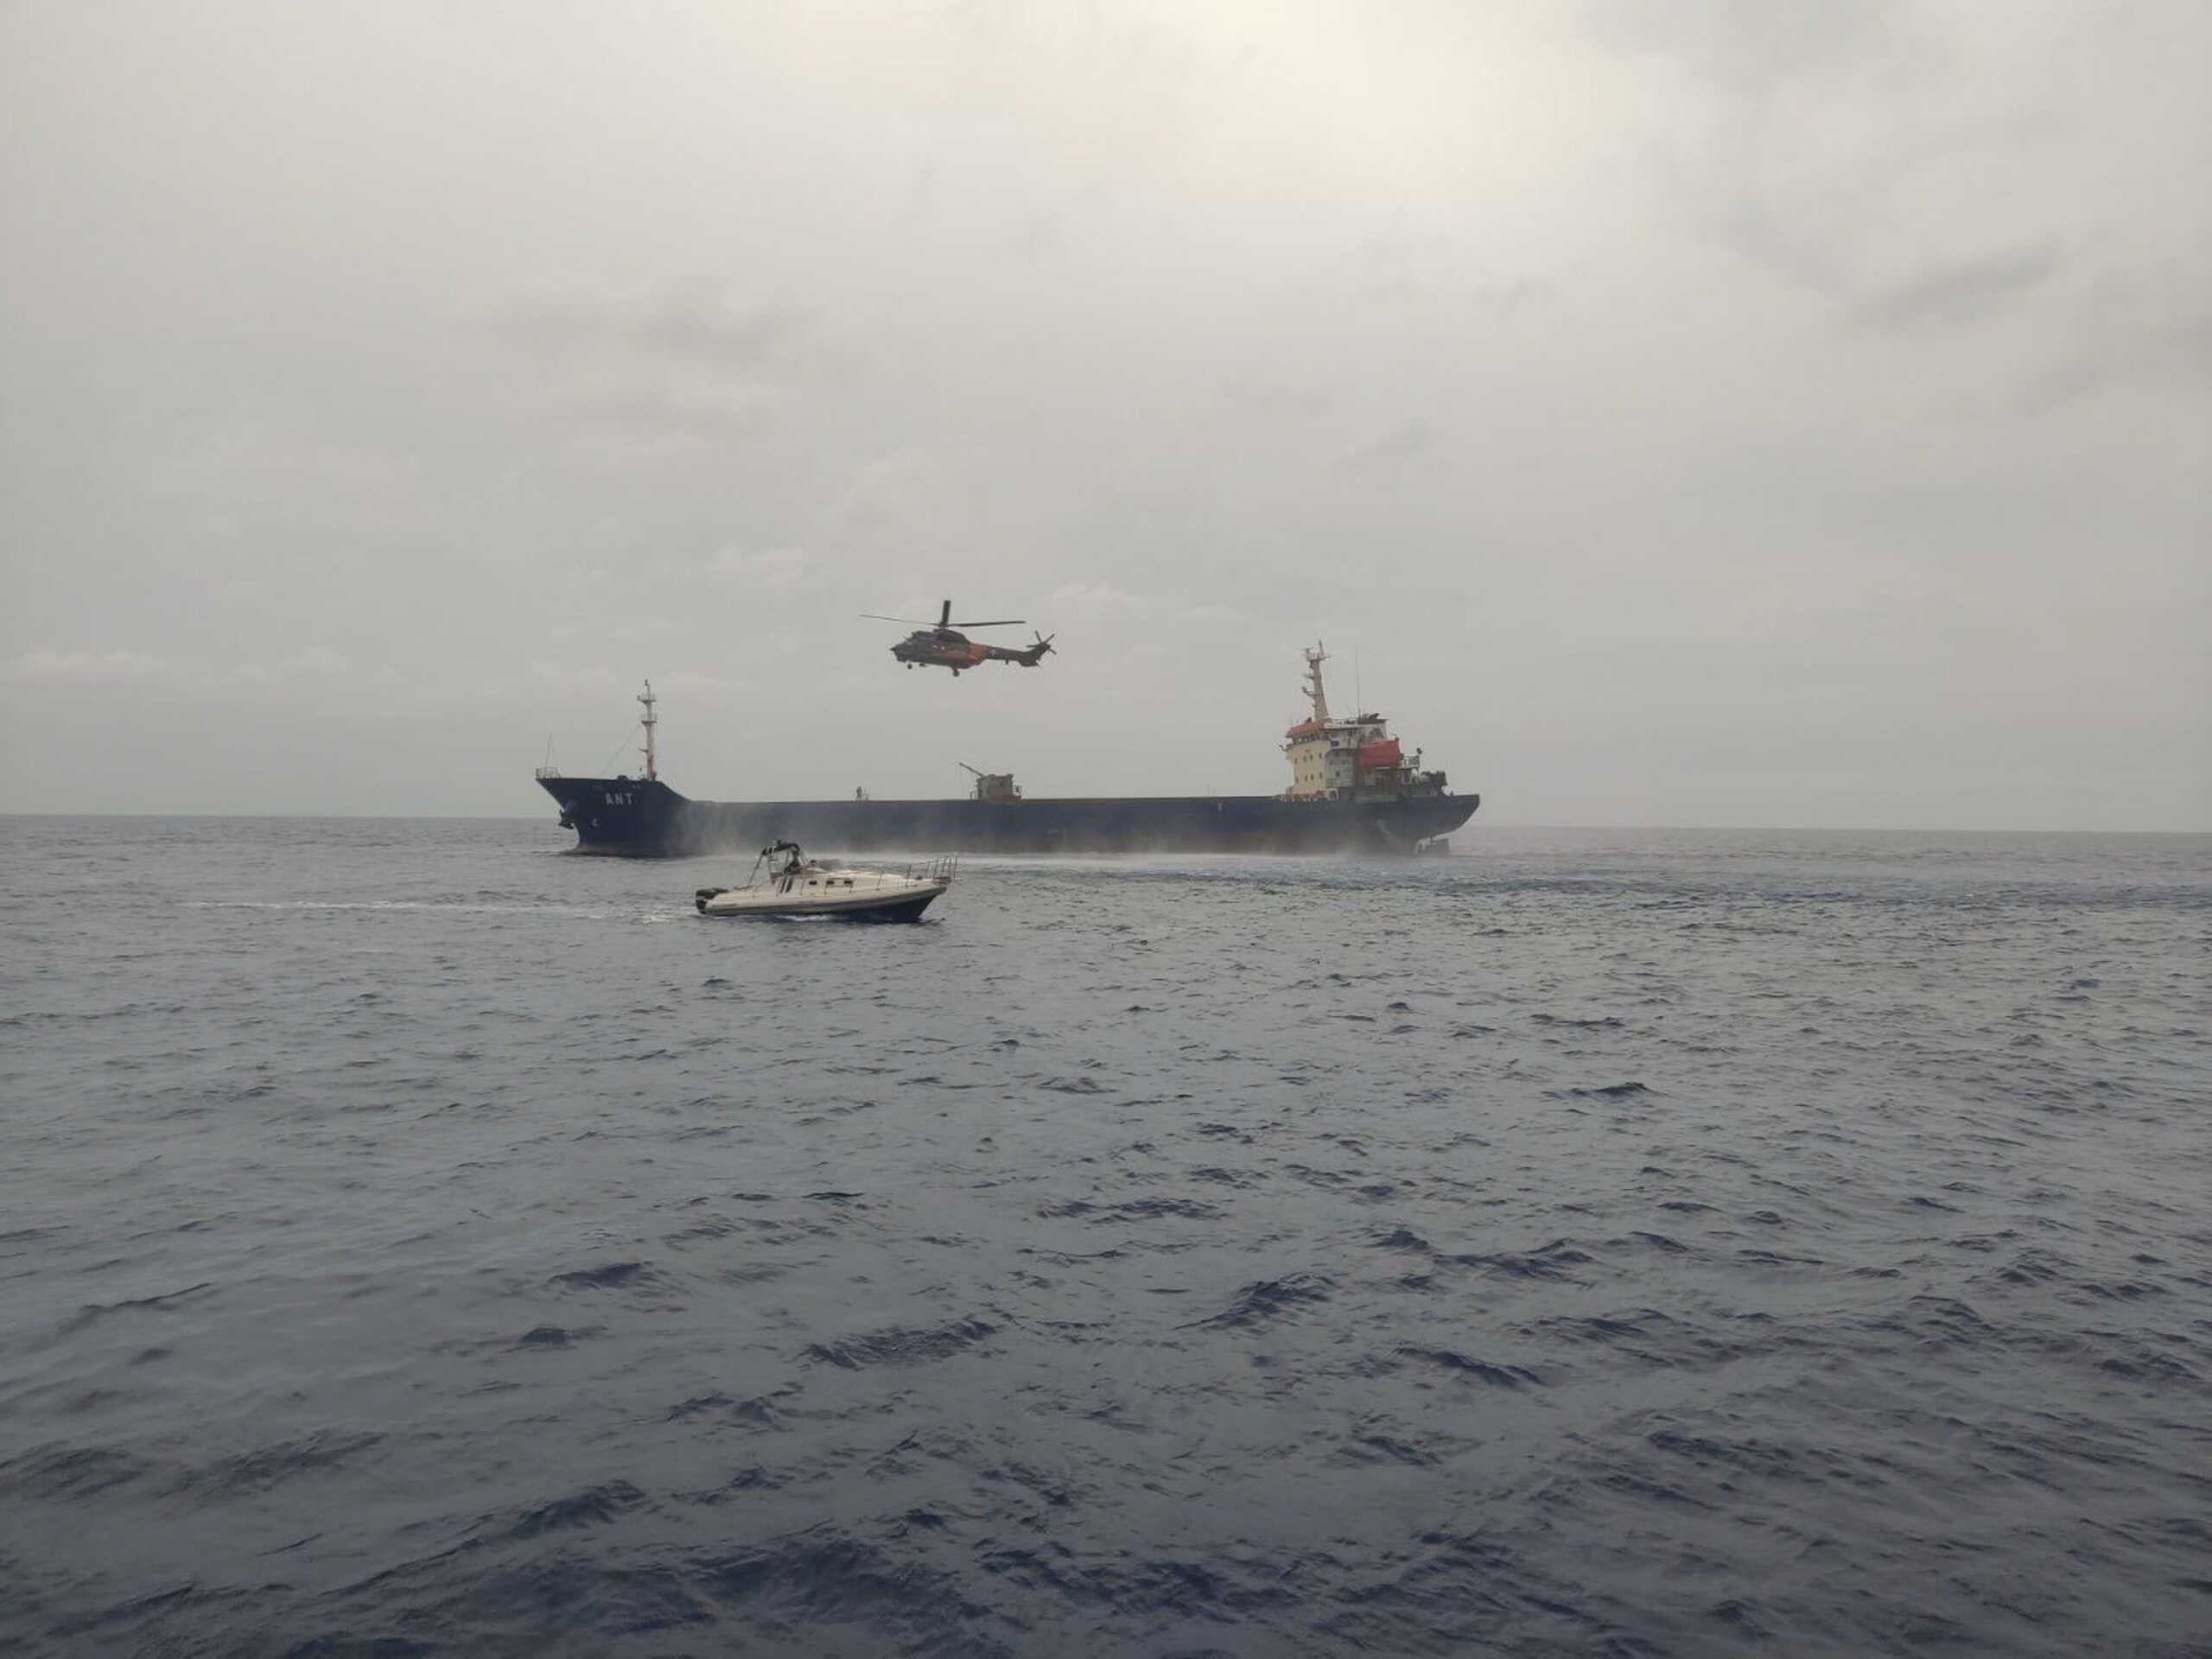 Μυτιλήνη: Μηχανική βλάβη σε φορτηγό πλοίο με 15 ναυτικούς